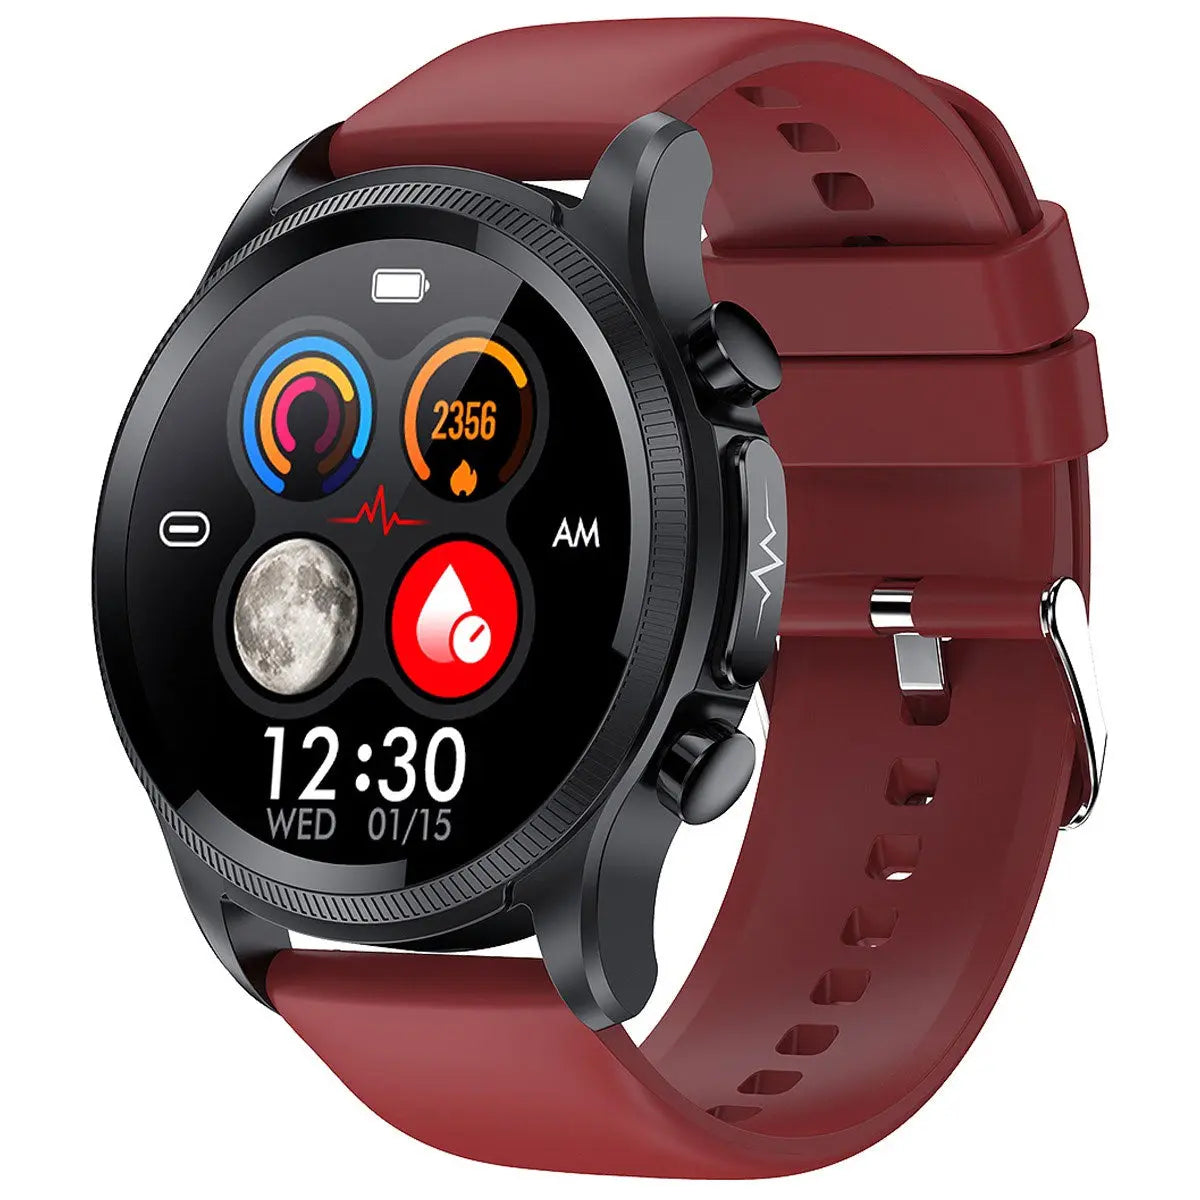 Reloj Smartwatch E400 Fralugio Ecg Real Mide Glucosa Spo2 Hr